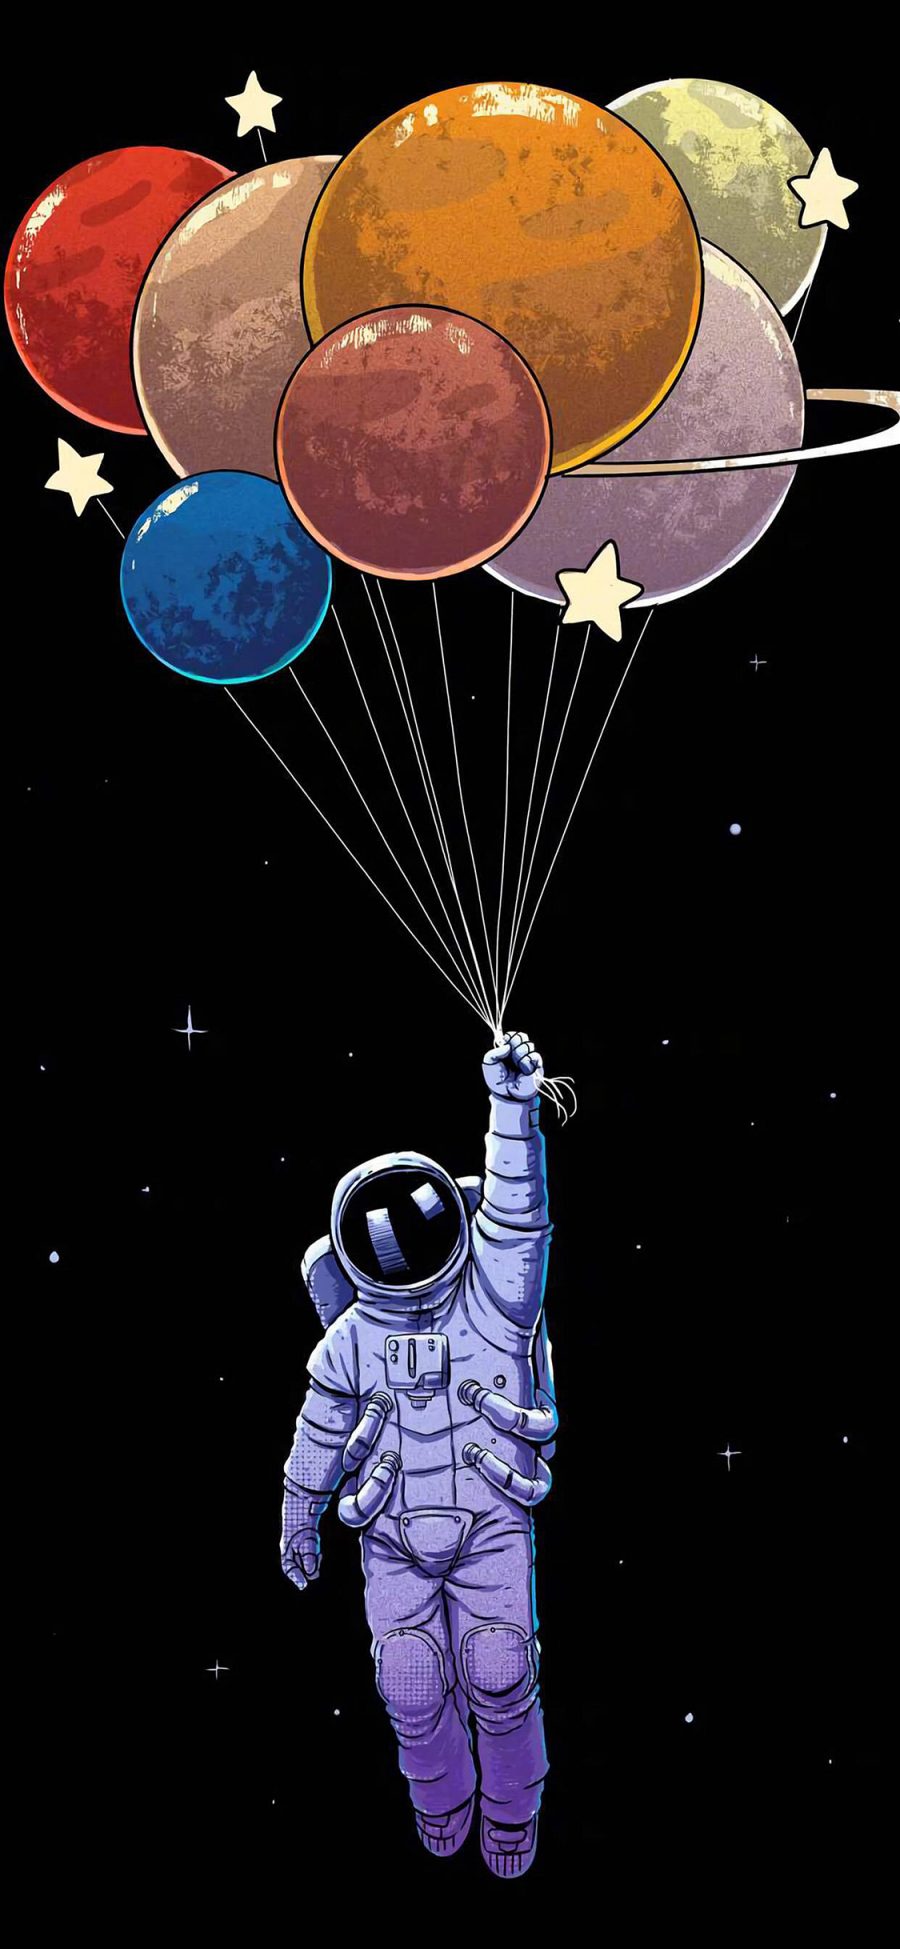 [2436×1125]宇航员 气球 升空 插画 苹果手机动漫壁纸图片